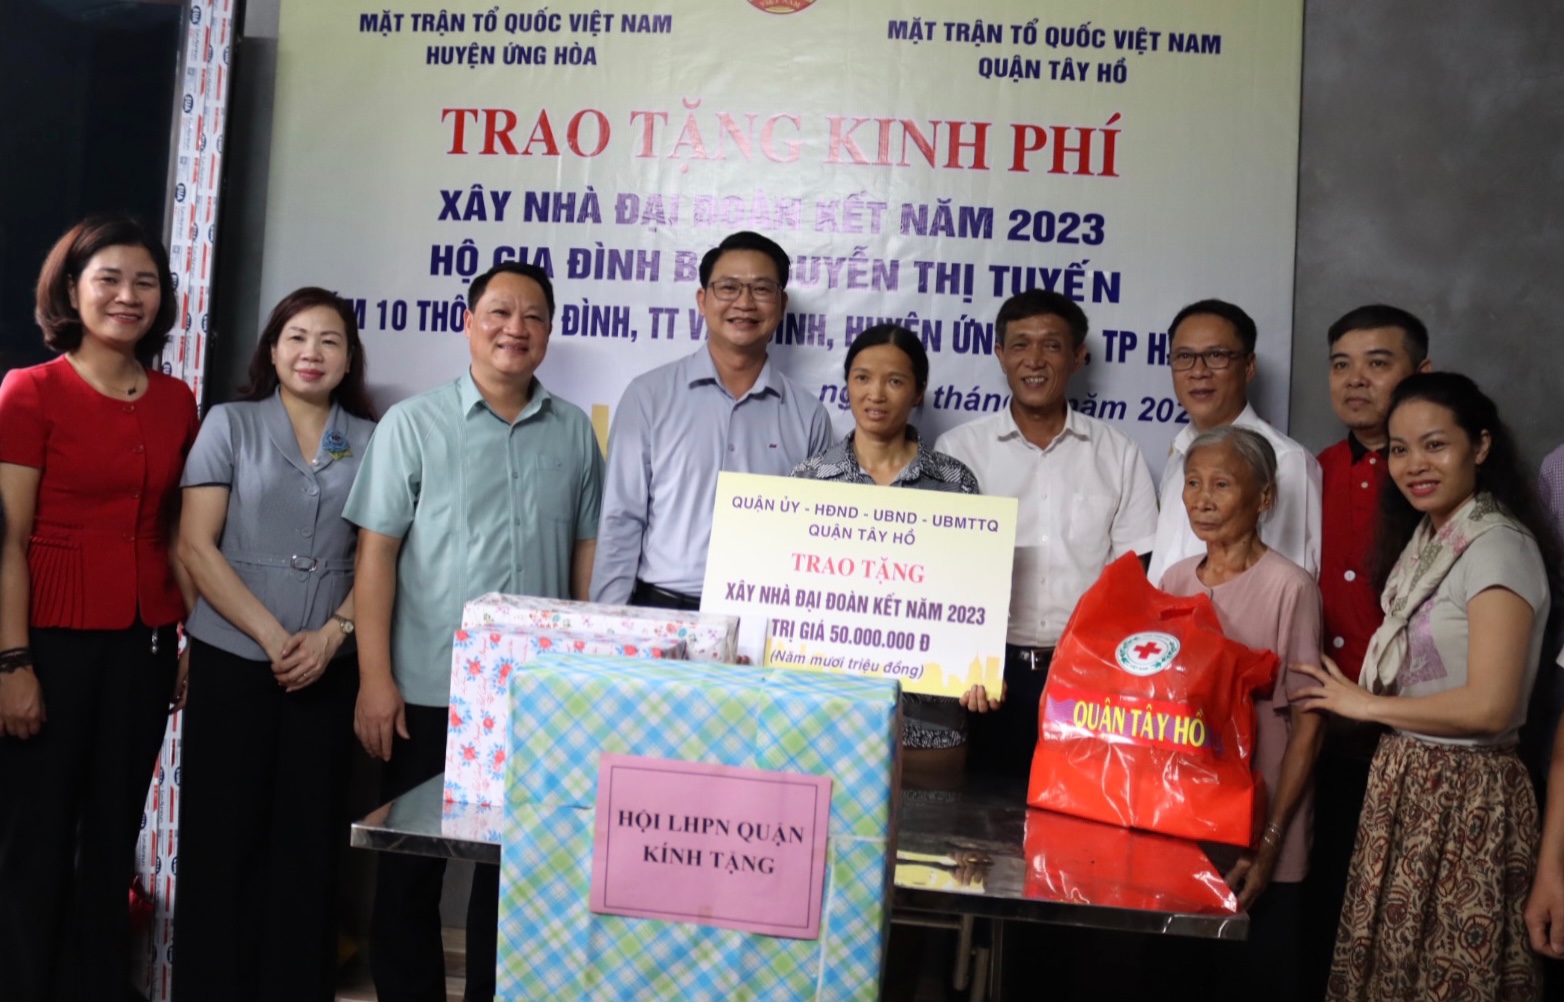 Uỷ ban MTTQ Việt Nam quận Tây Hồ trao tặng quà và kinh phí hỗ trợ xây dựng nhà với gia đình chị Nguyễn Thị Tuyến